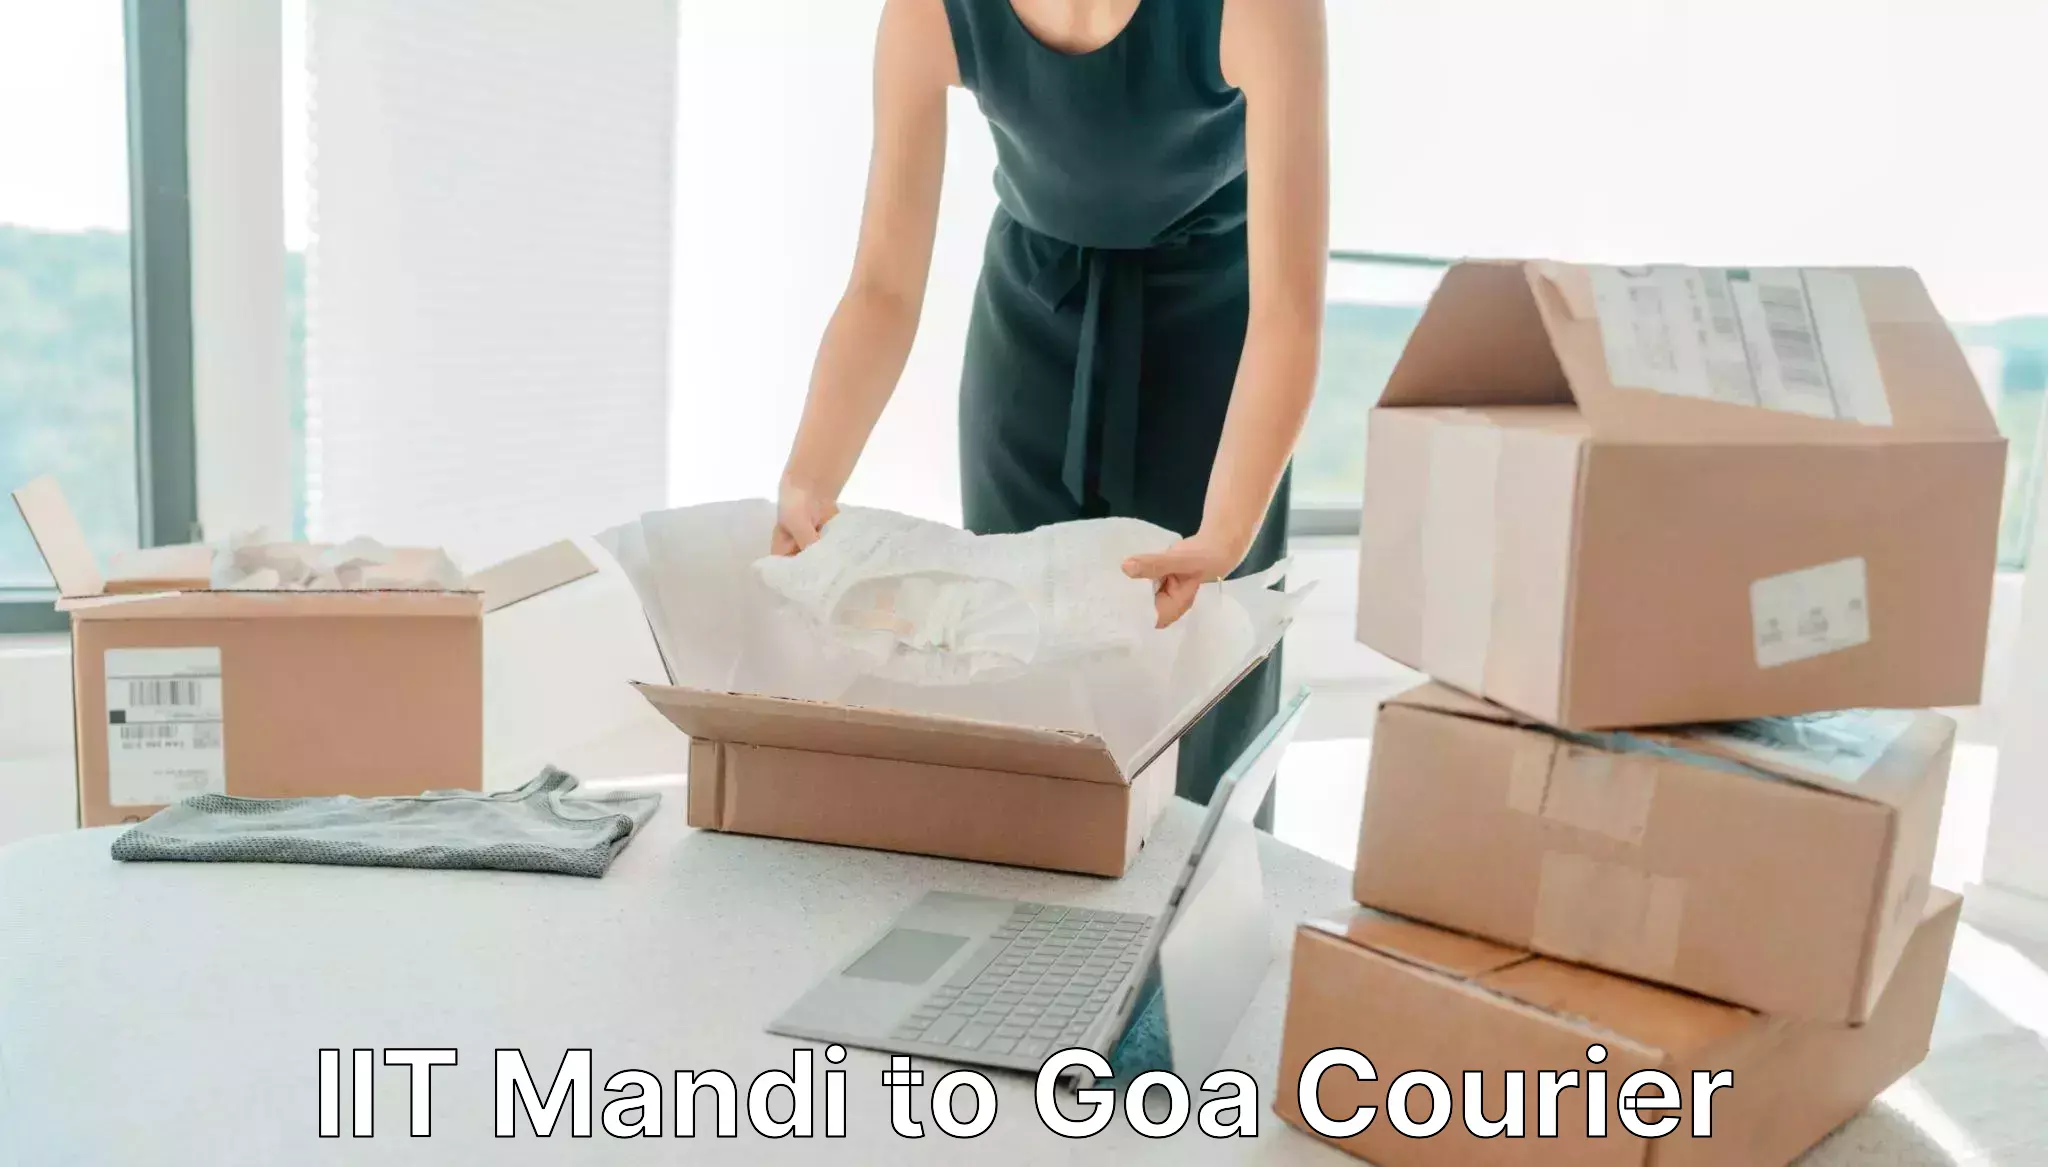 Advanced shipping technology IIT Mandi to Goa